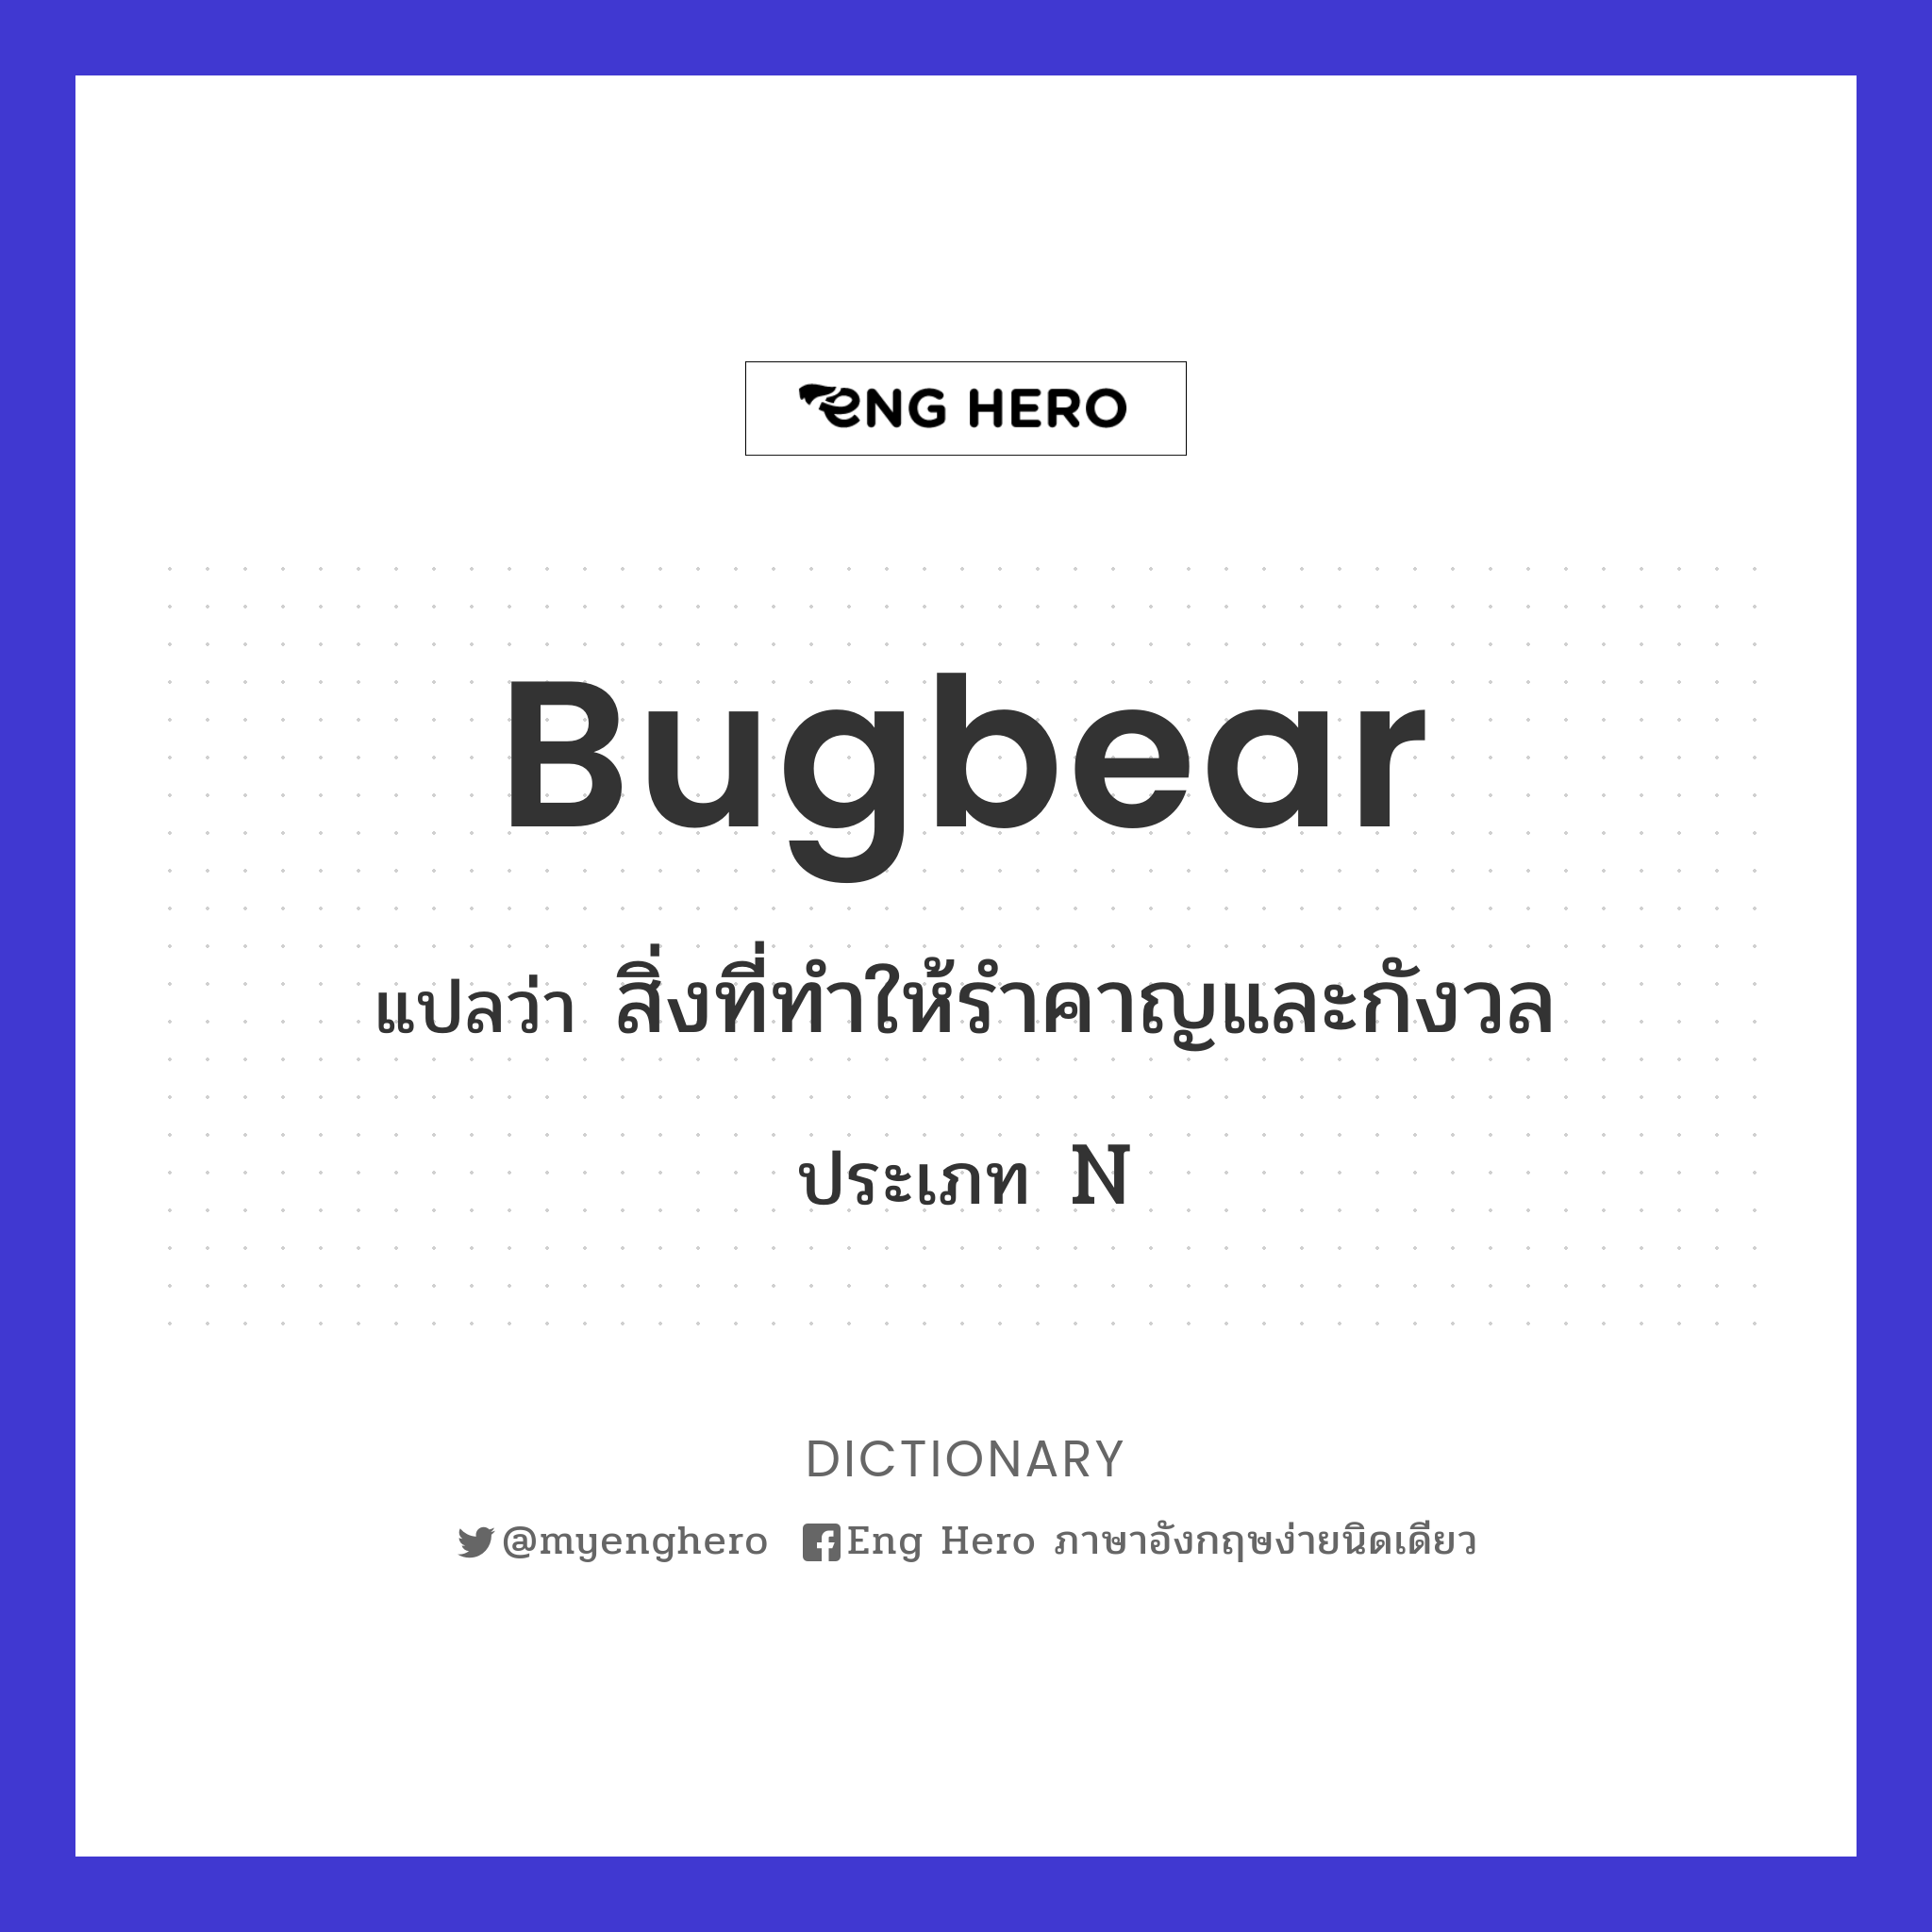 bugbear